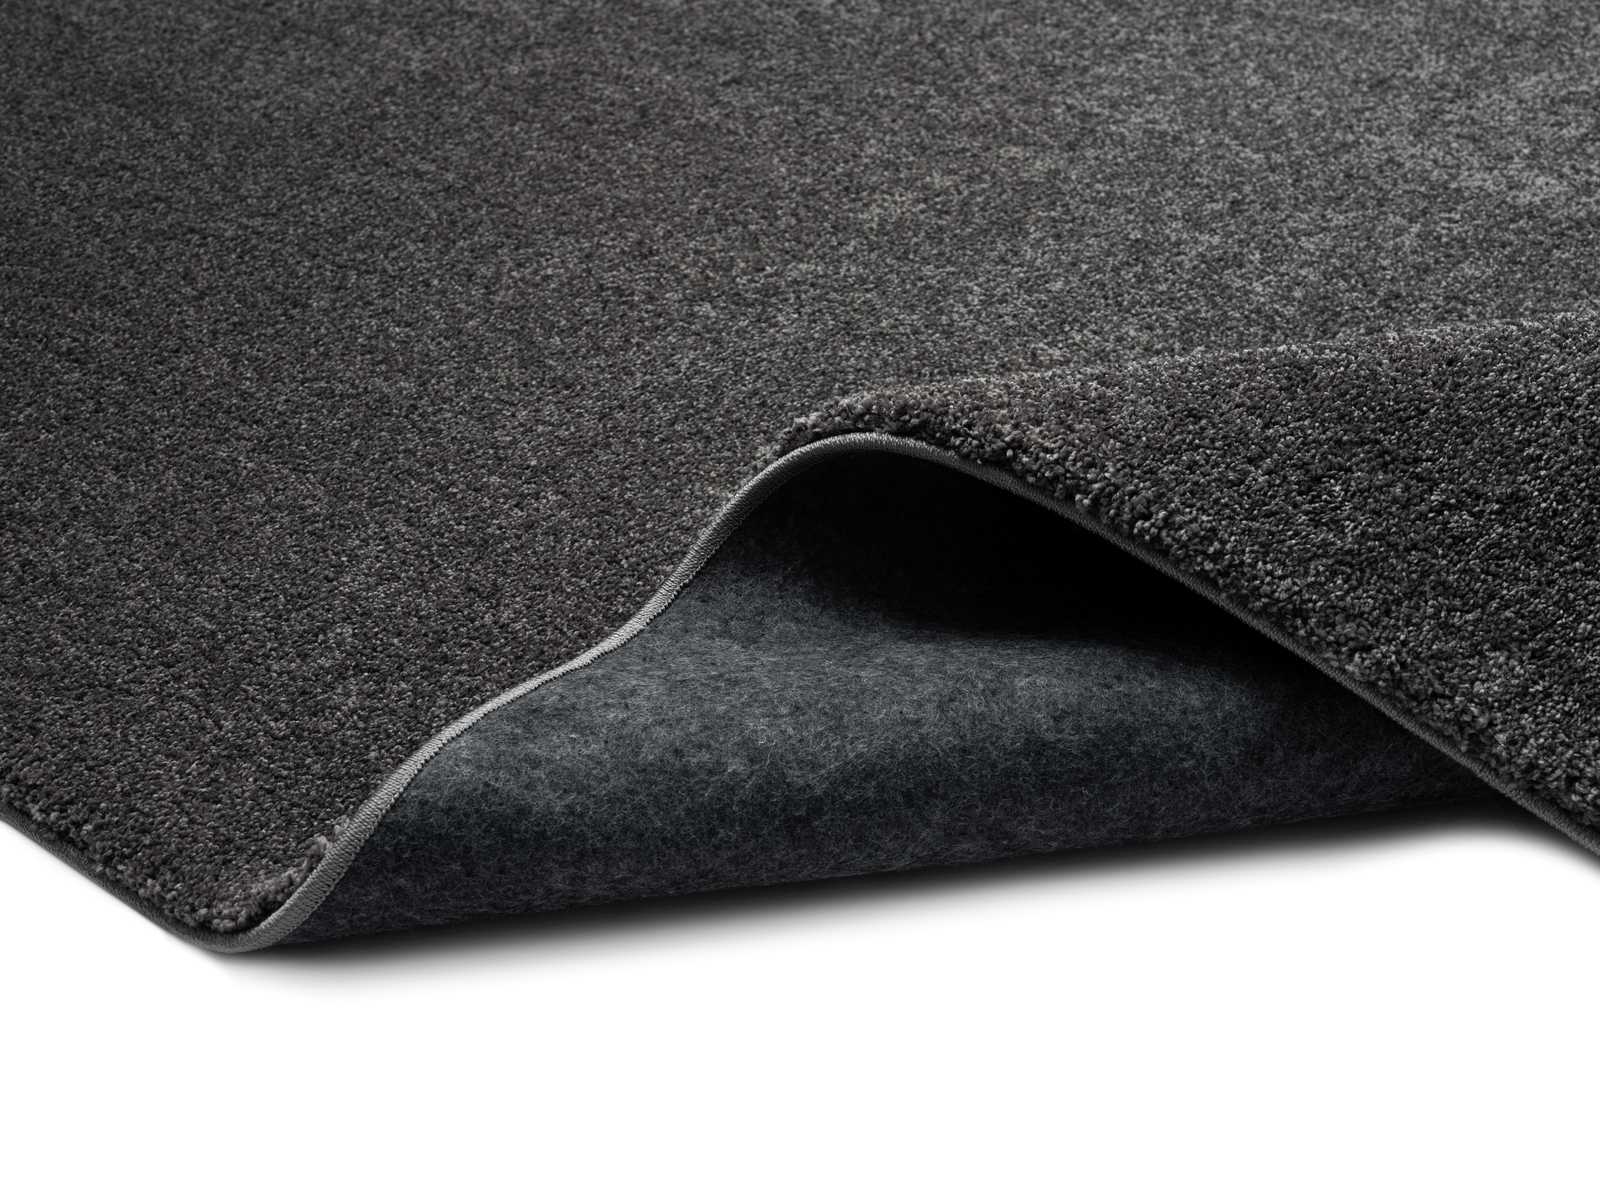             Soft short pile carpet in anthracite - 110 x 60 cm
        